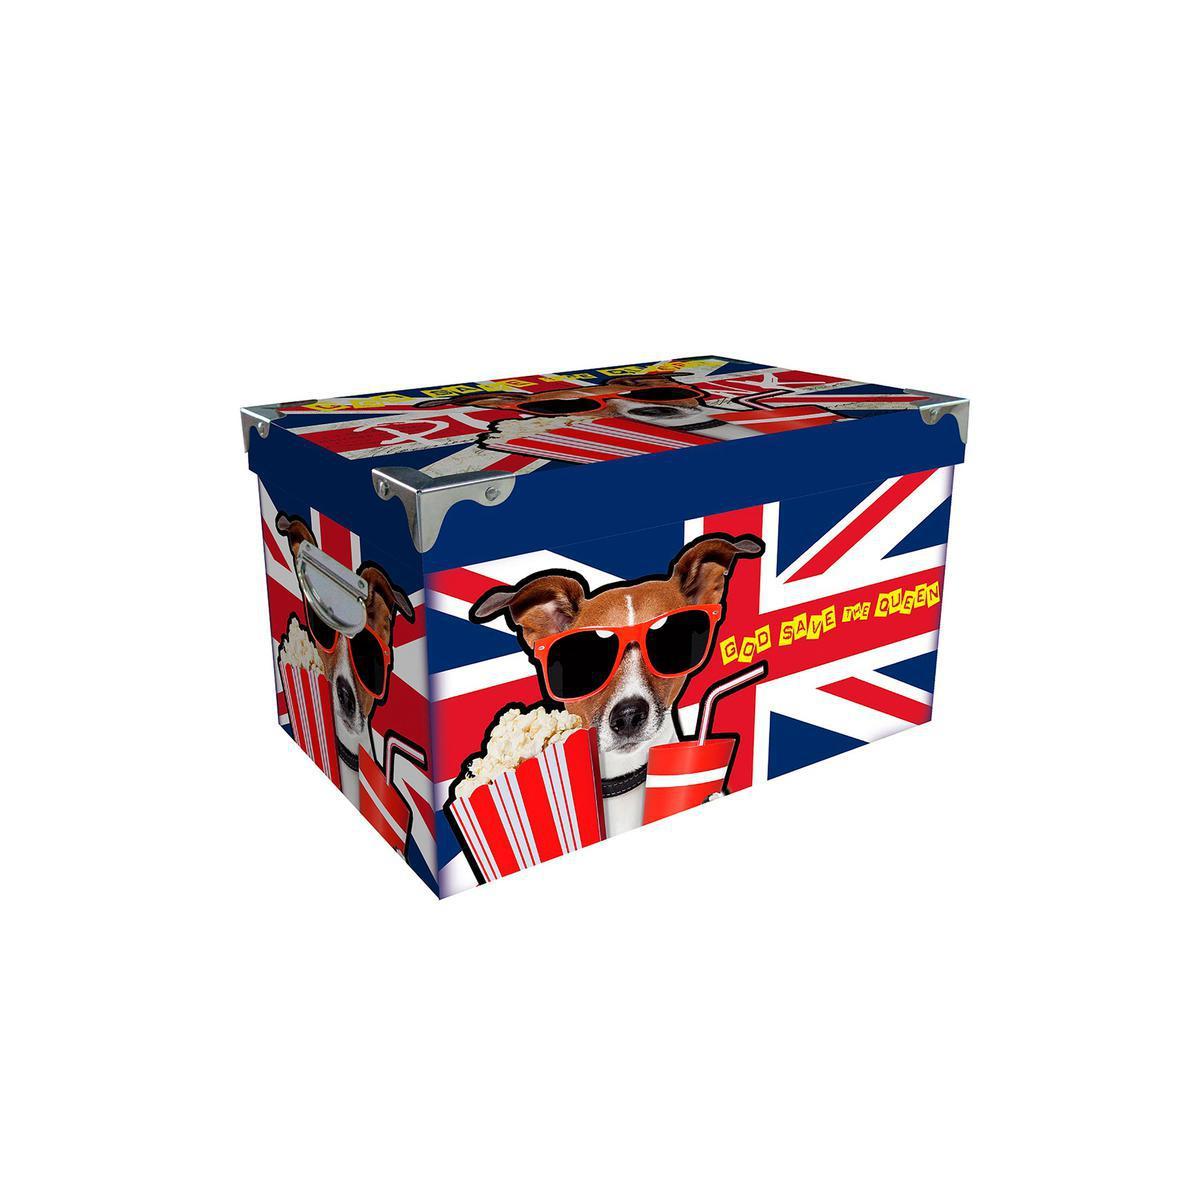 Boîte UK Dog - Carton et métal - 29 x 21 x H 12,5 cm - Multicolore